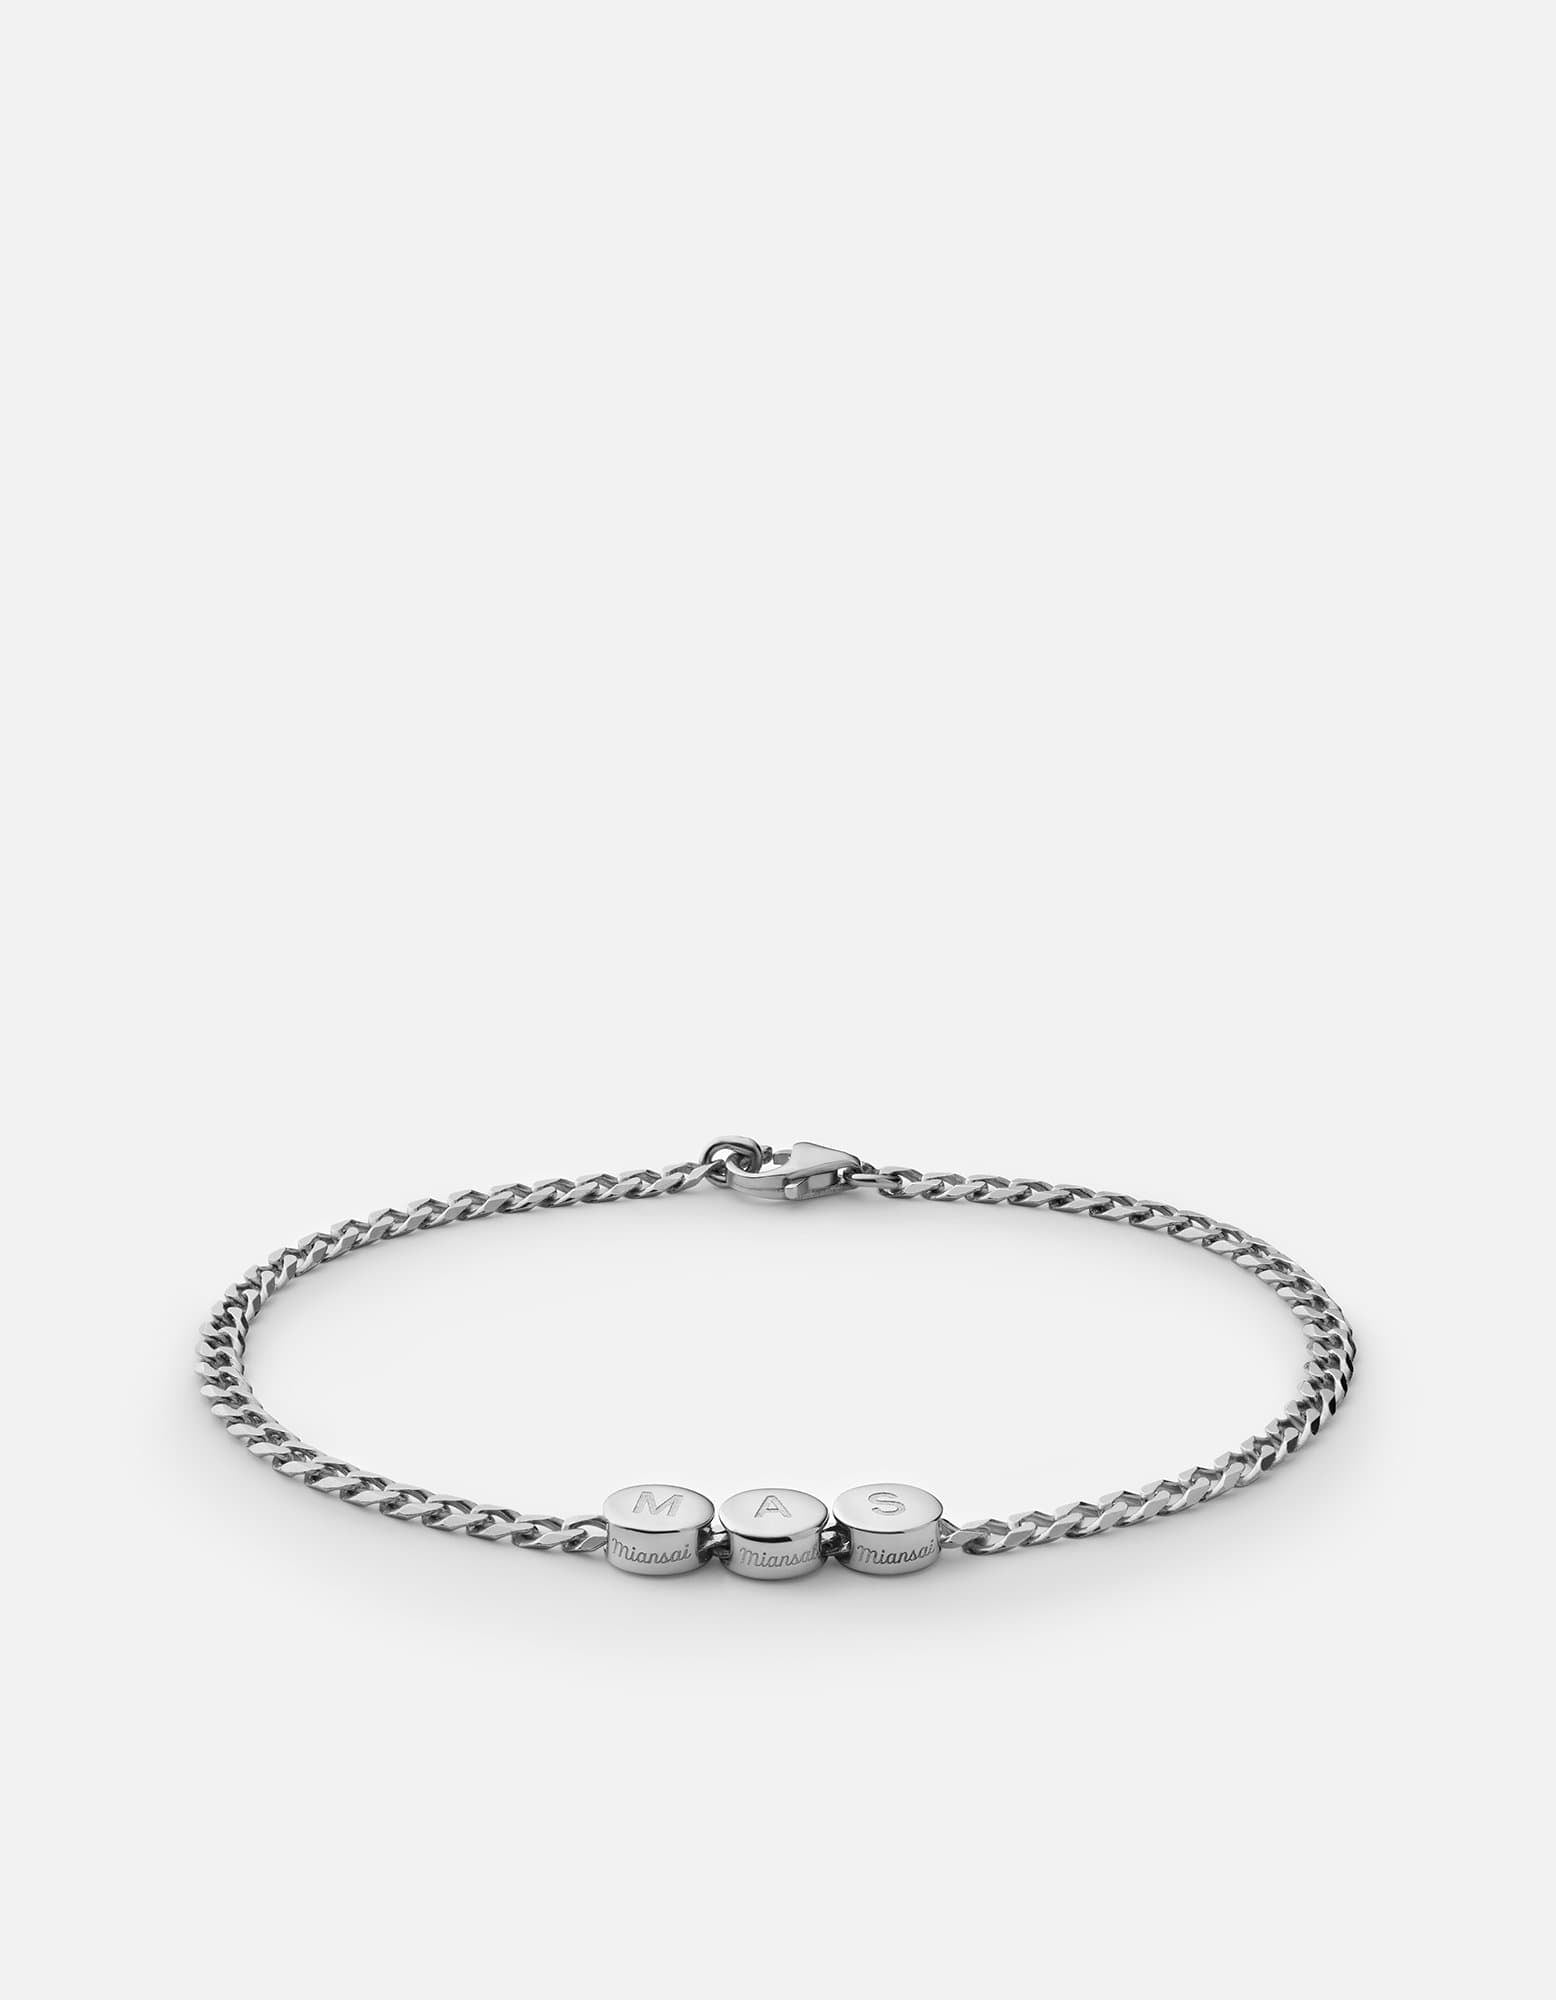 Type Chain Bracelet, Sterling Silver, Men's Bracelets